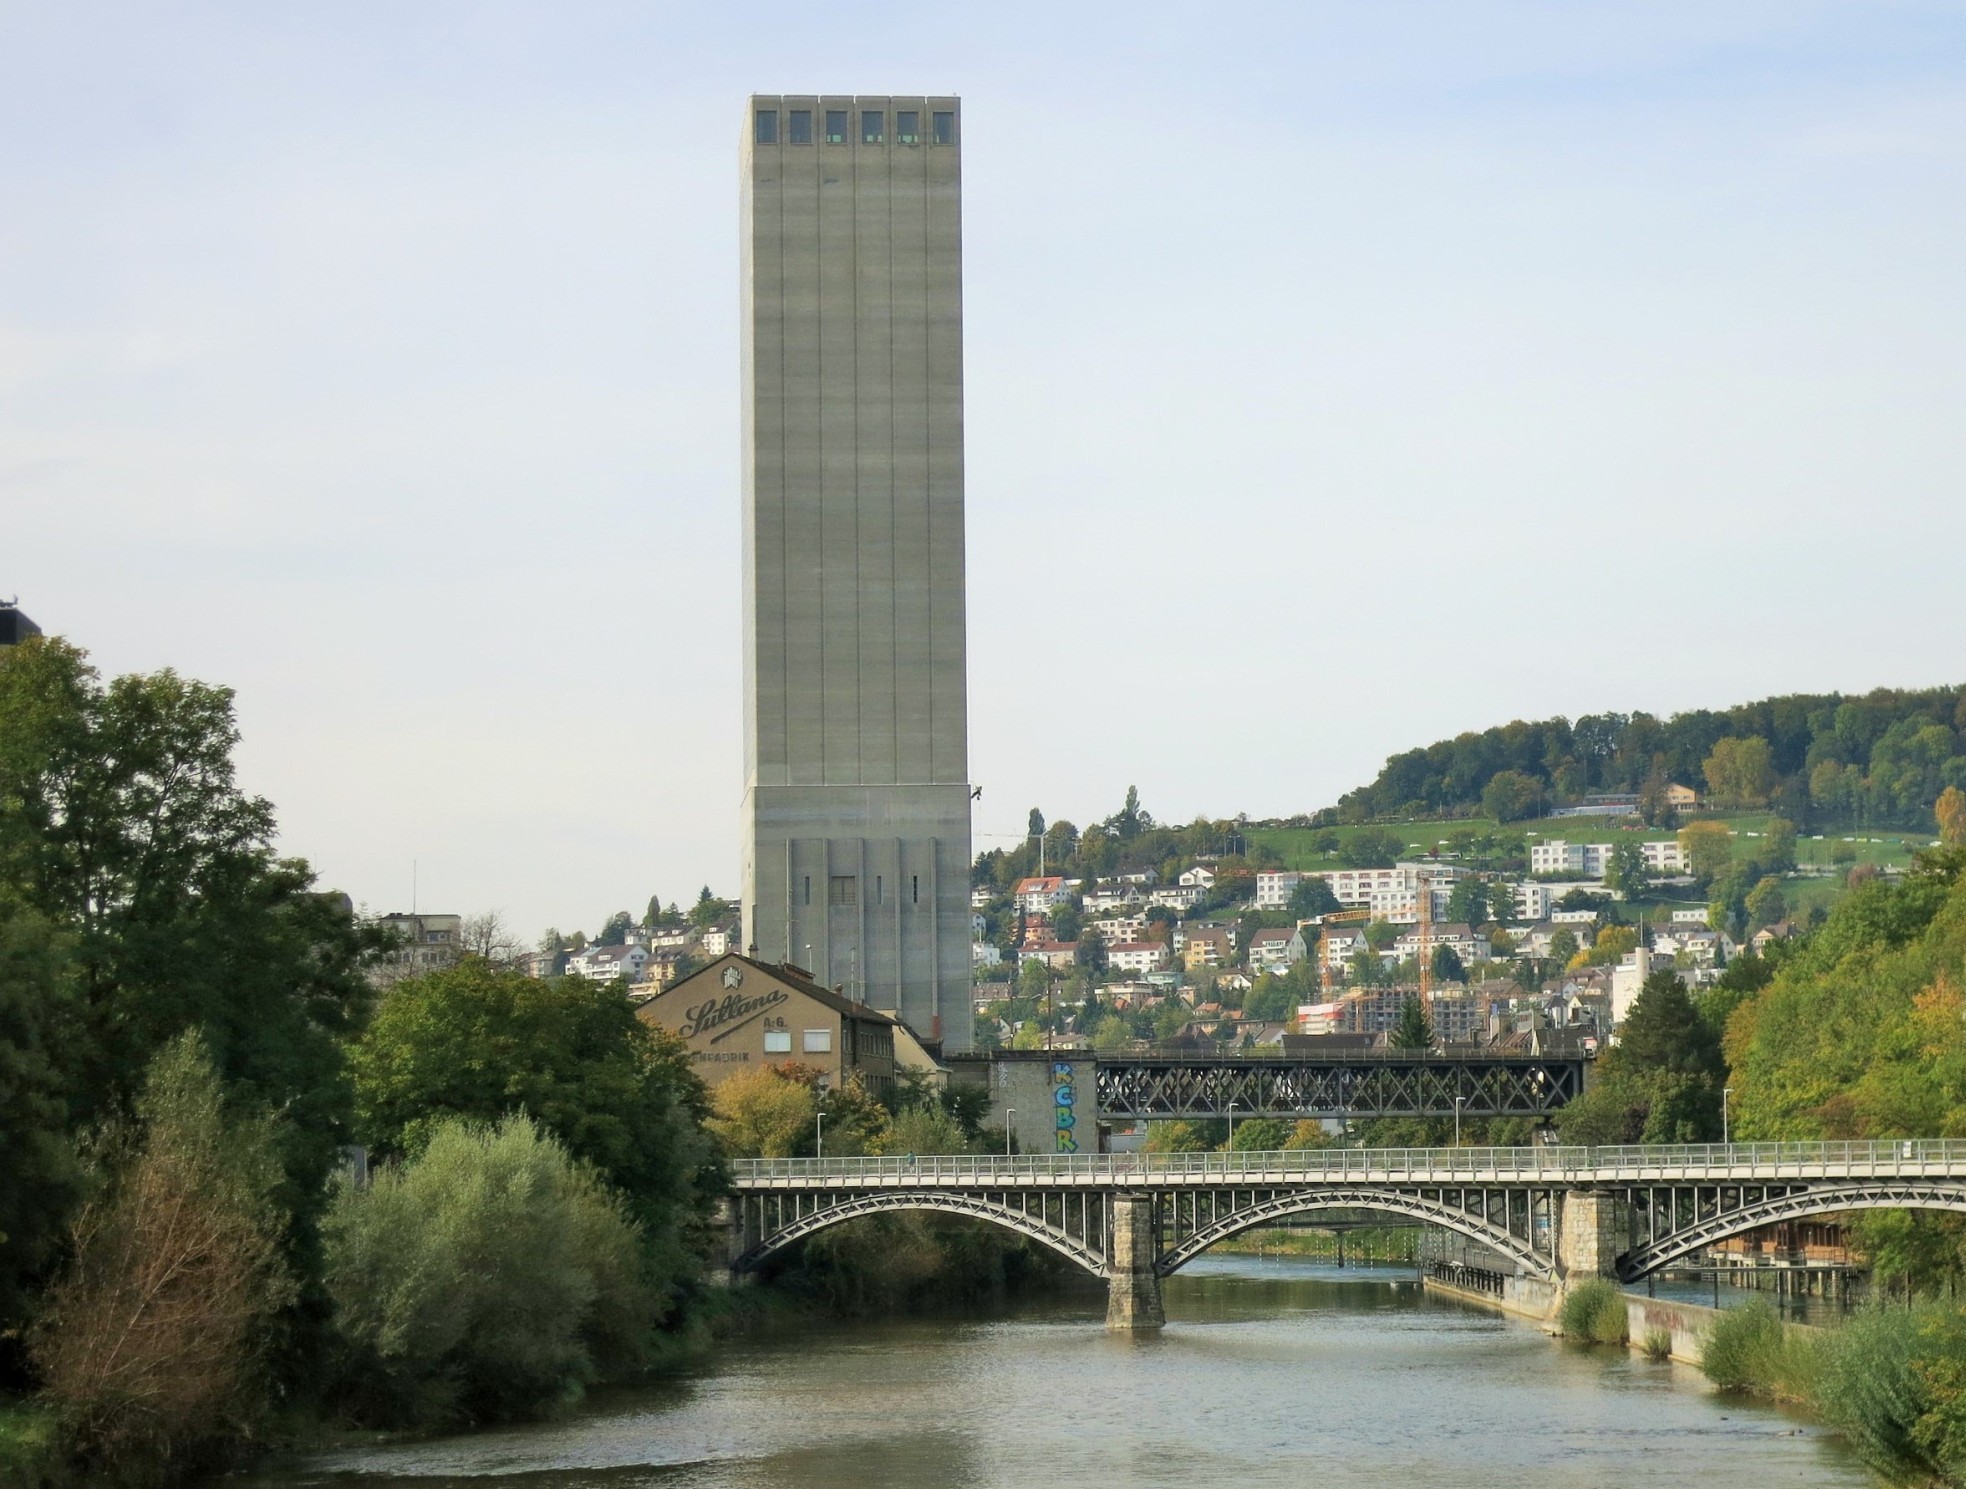 Le silo à grains de Swissmill est actuellement la deuxième tour la plus haute de Zurich. Et ce, après avoir été surélevé à 118 m à partir de 2013. Le projet a été réalisé par le bureau Haas Partner. A l'origine, la tour ne mesurait que 40 m de haut. Aujou